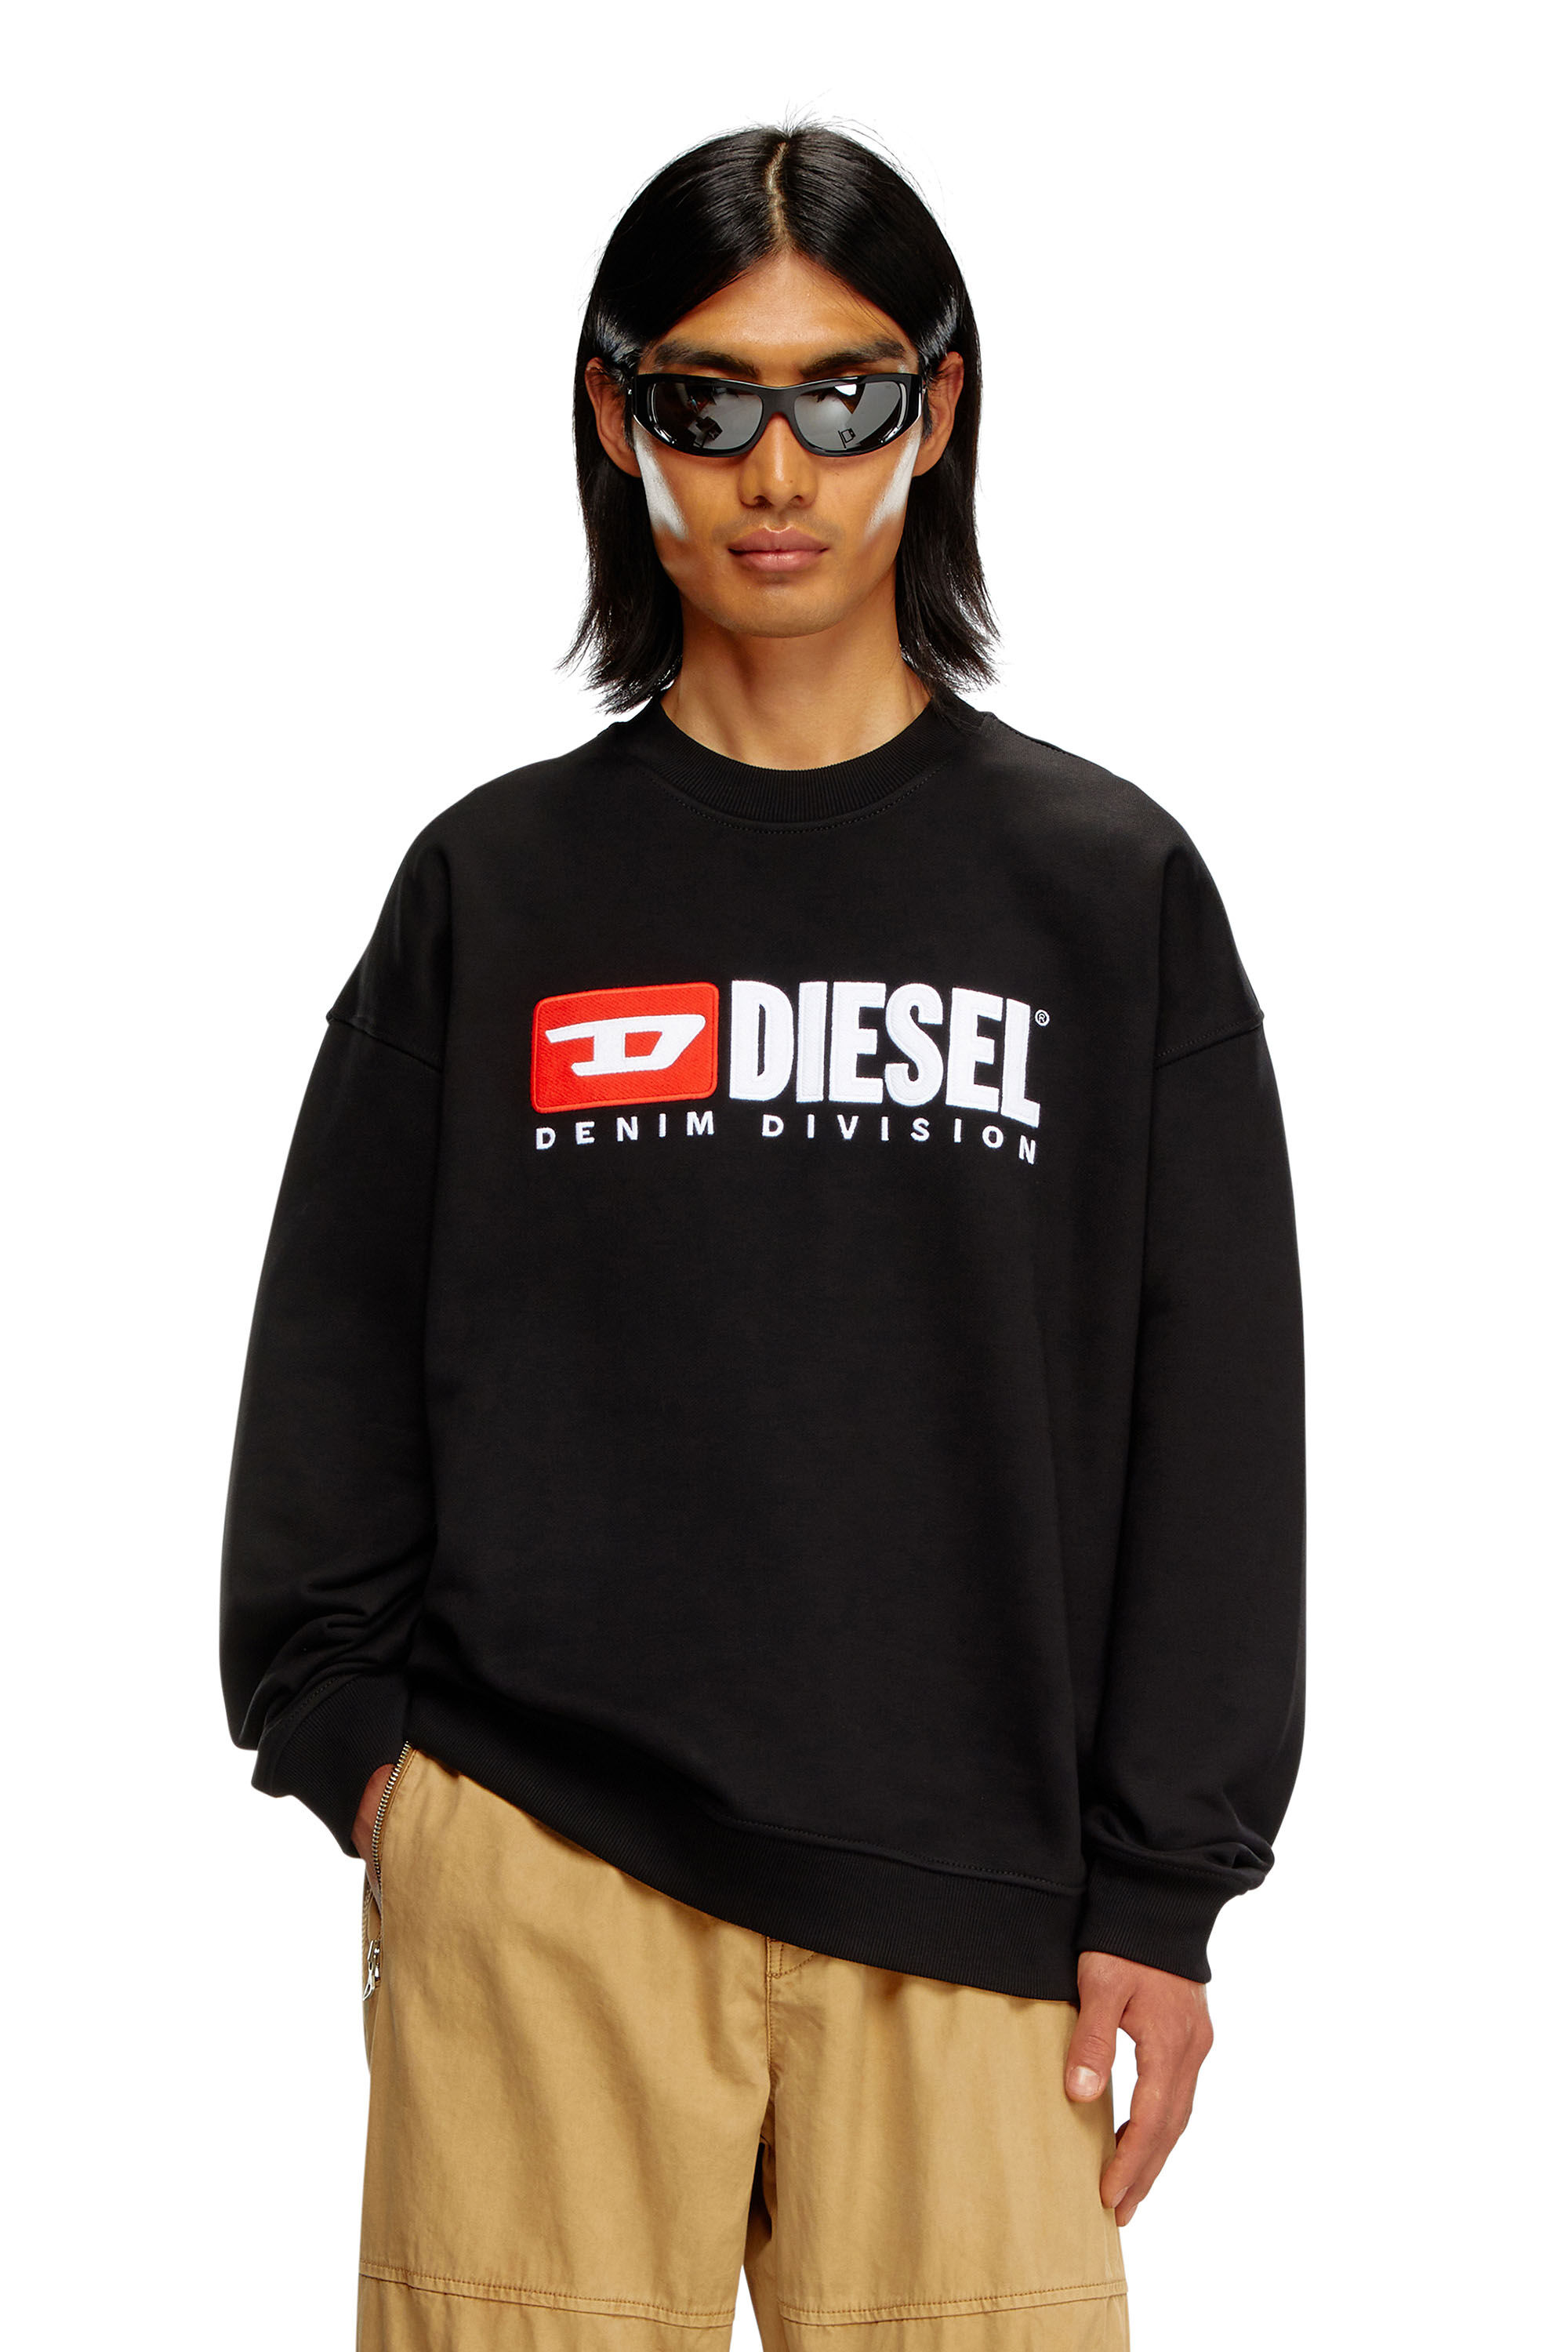 Diesel - S-BOXT-DIV, Herren Sweatshirt mit Denim Division-Logo in Schwarz - Image 3